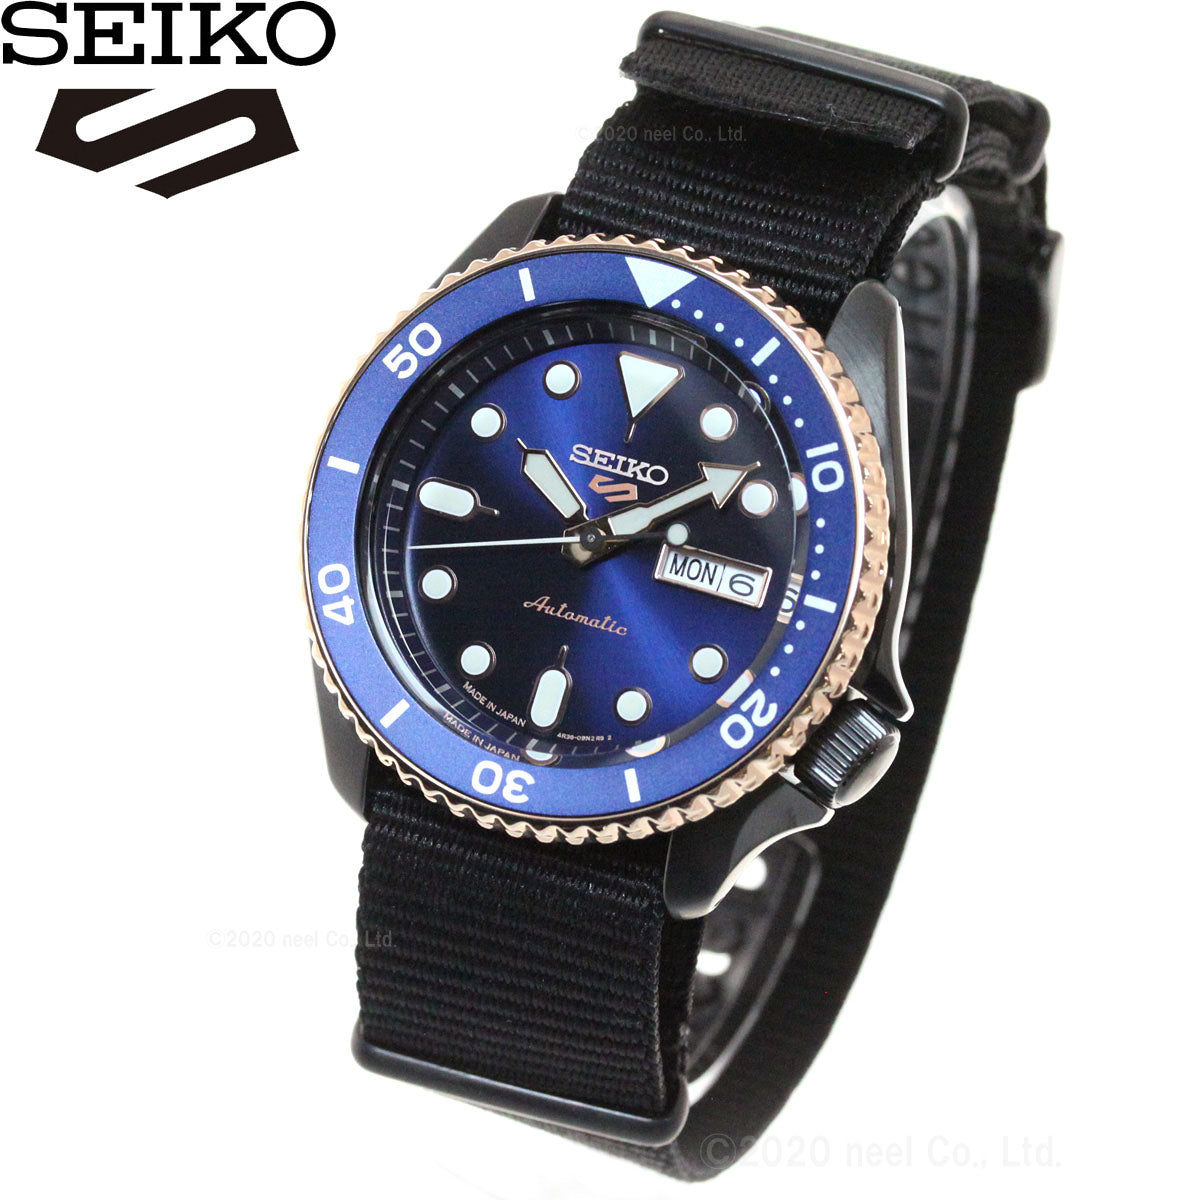 セイコー5 スポーツ SEIKO 5 SPORTS 自動巻き メカニカル ショップ限定 流通限定モデル 腕時計 メンズ セイコーファイブ スポーツ Sports SBSA098